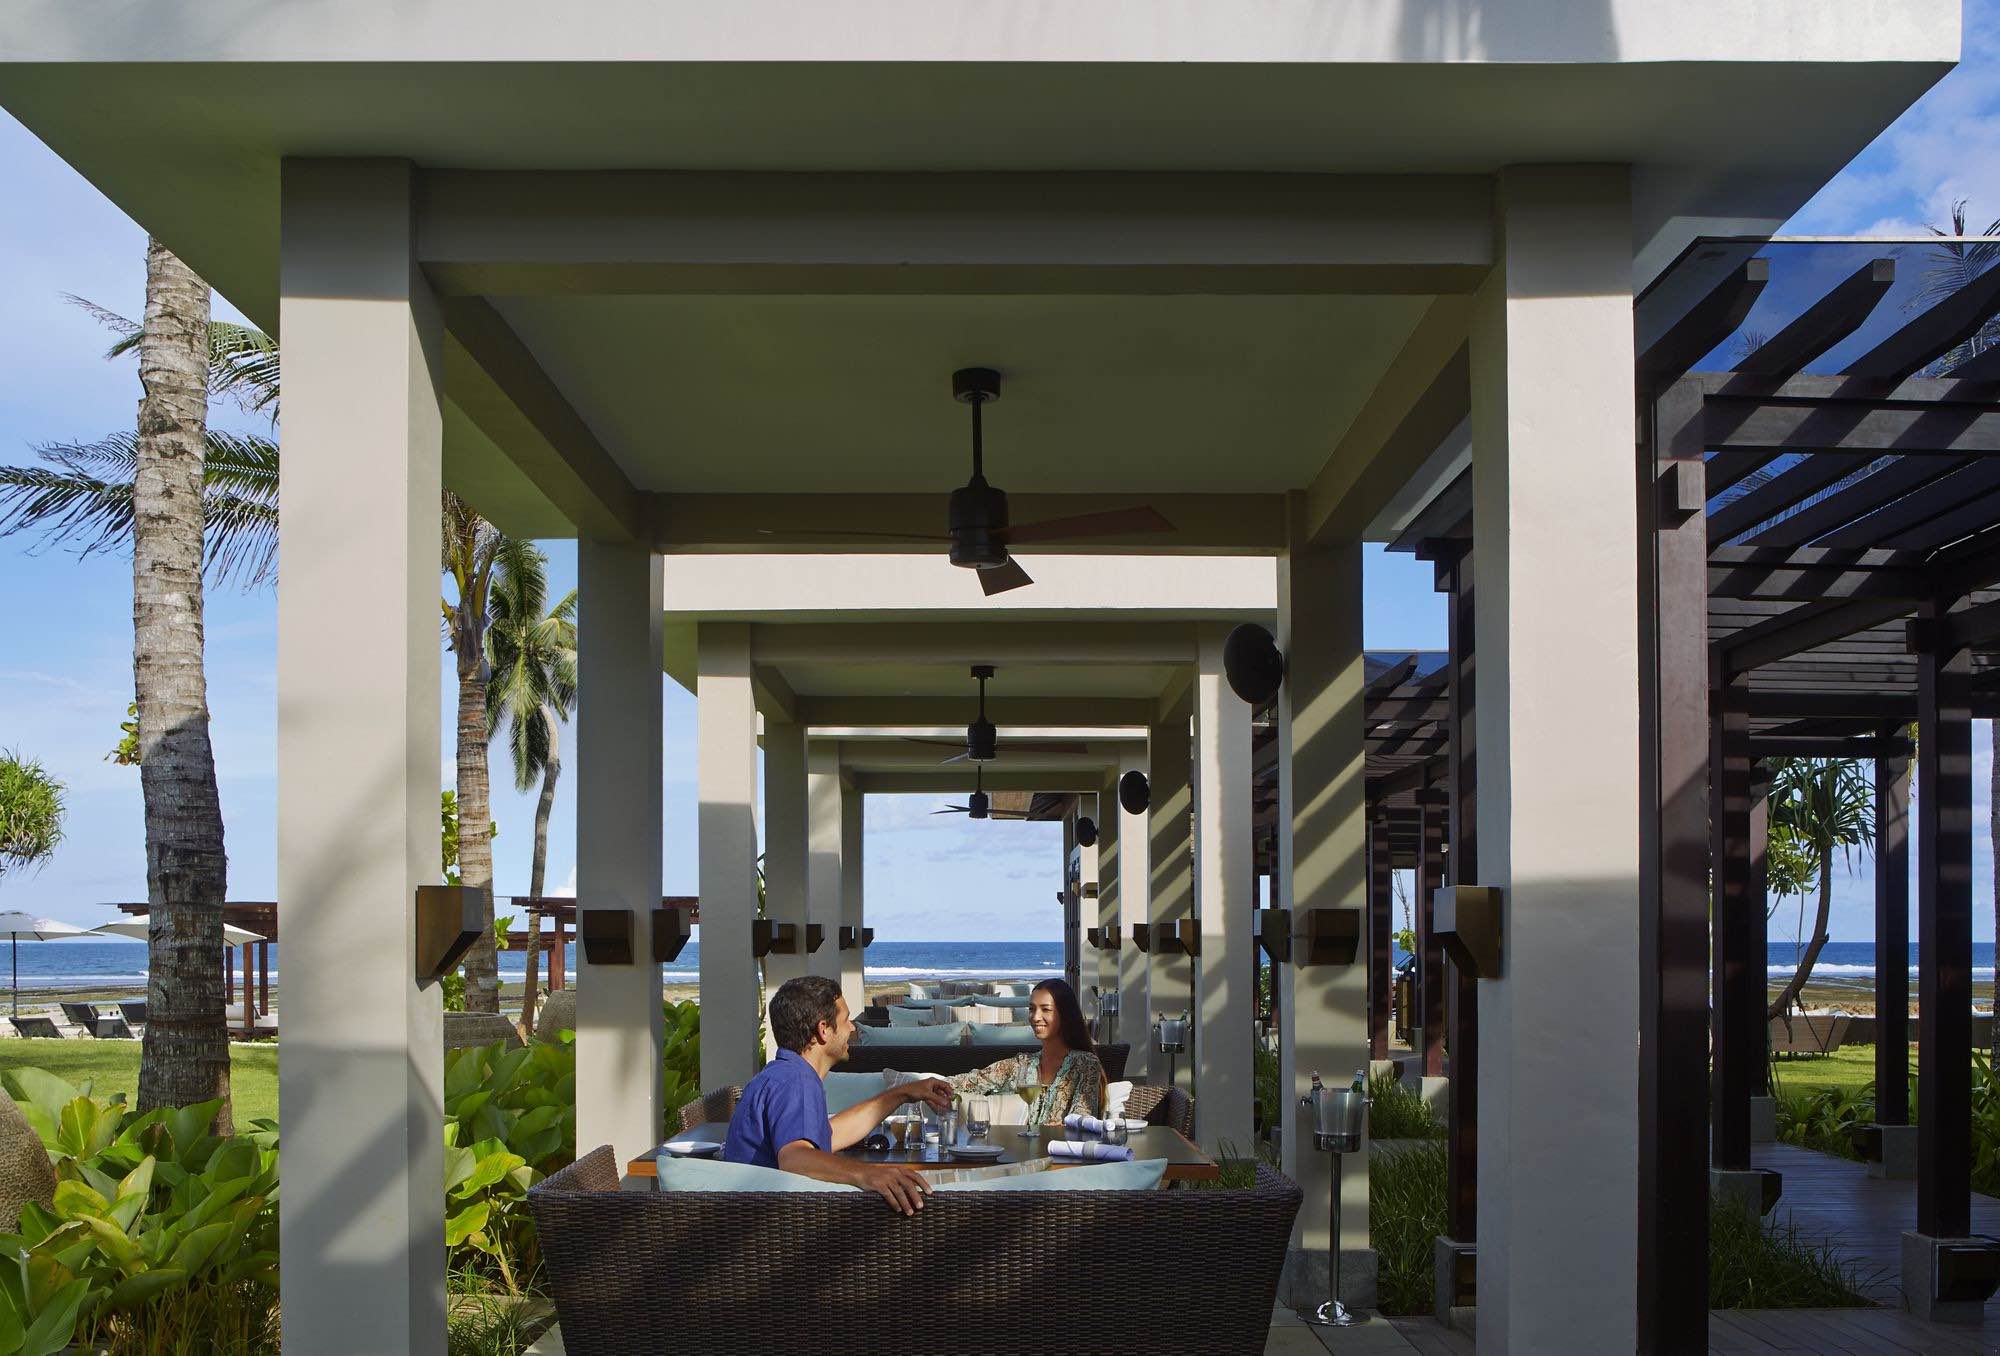 The Ritz Carlton Bali, The Beach Grill